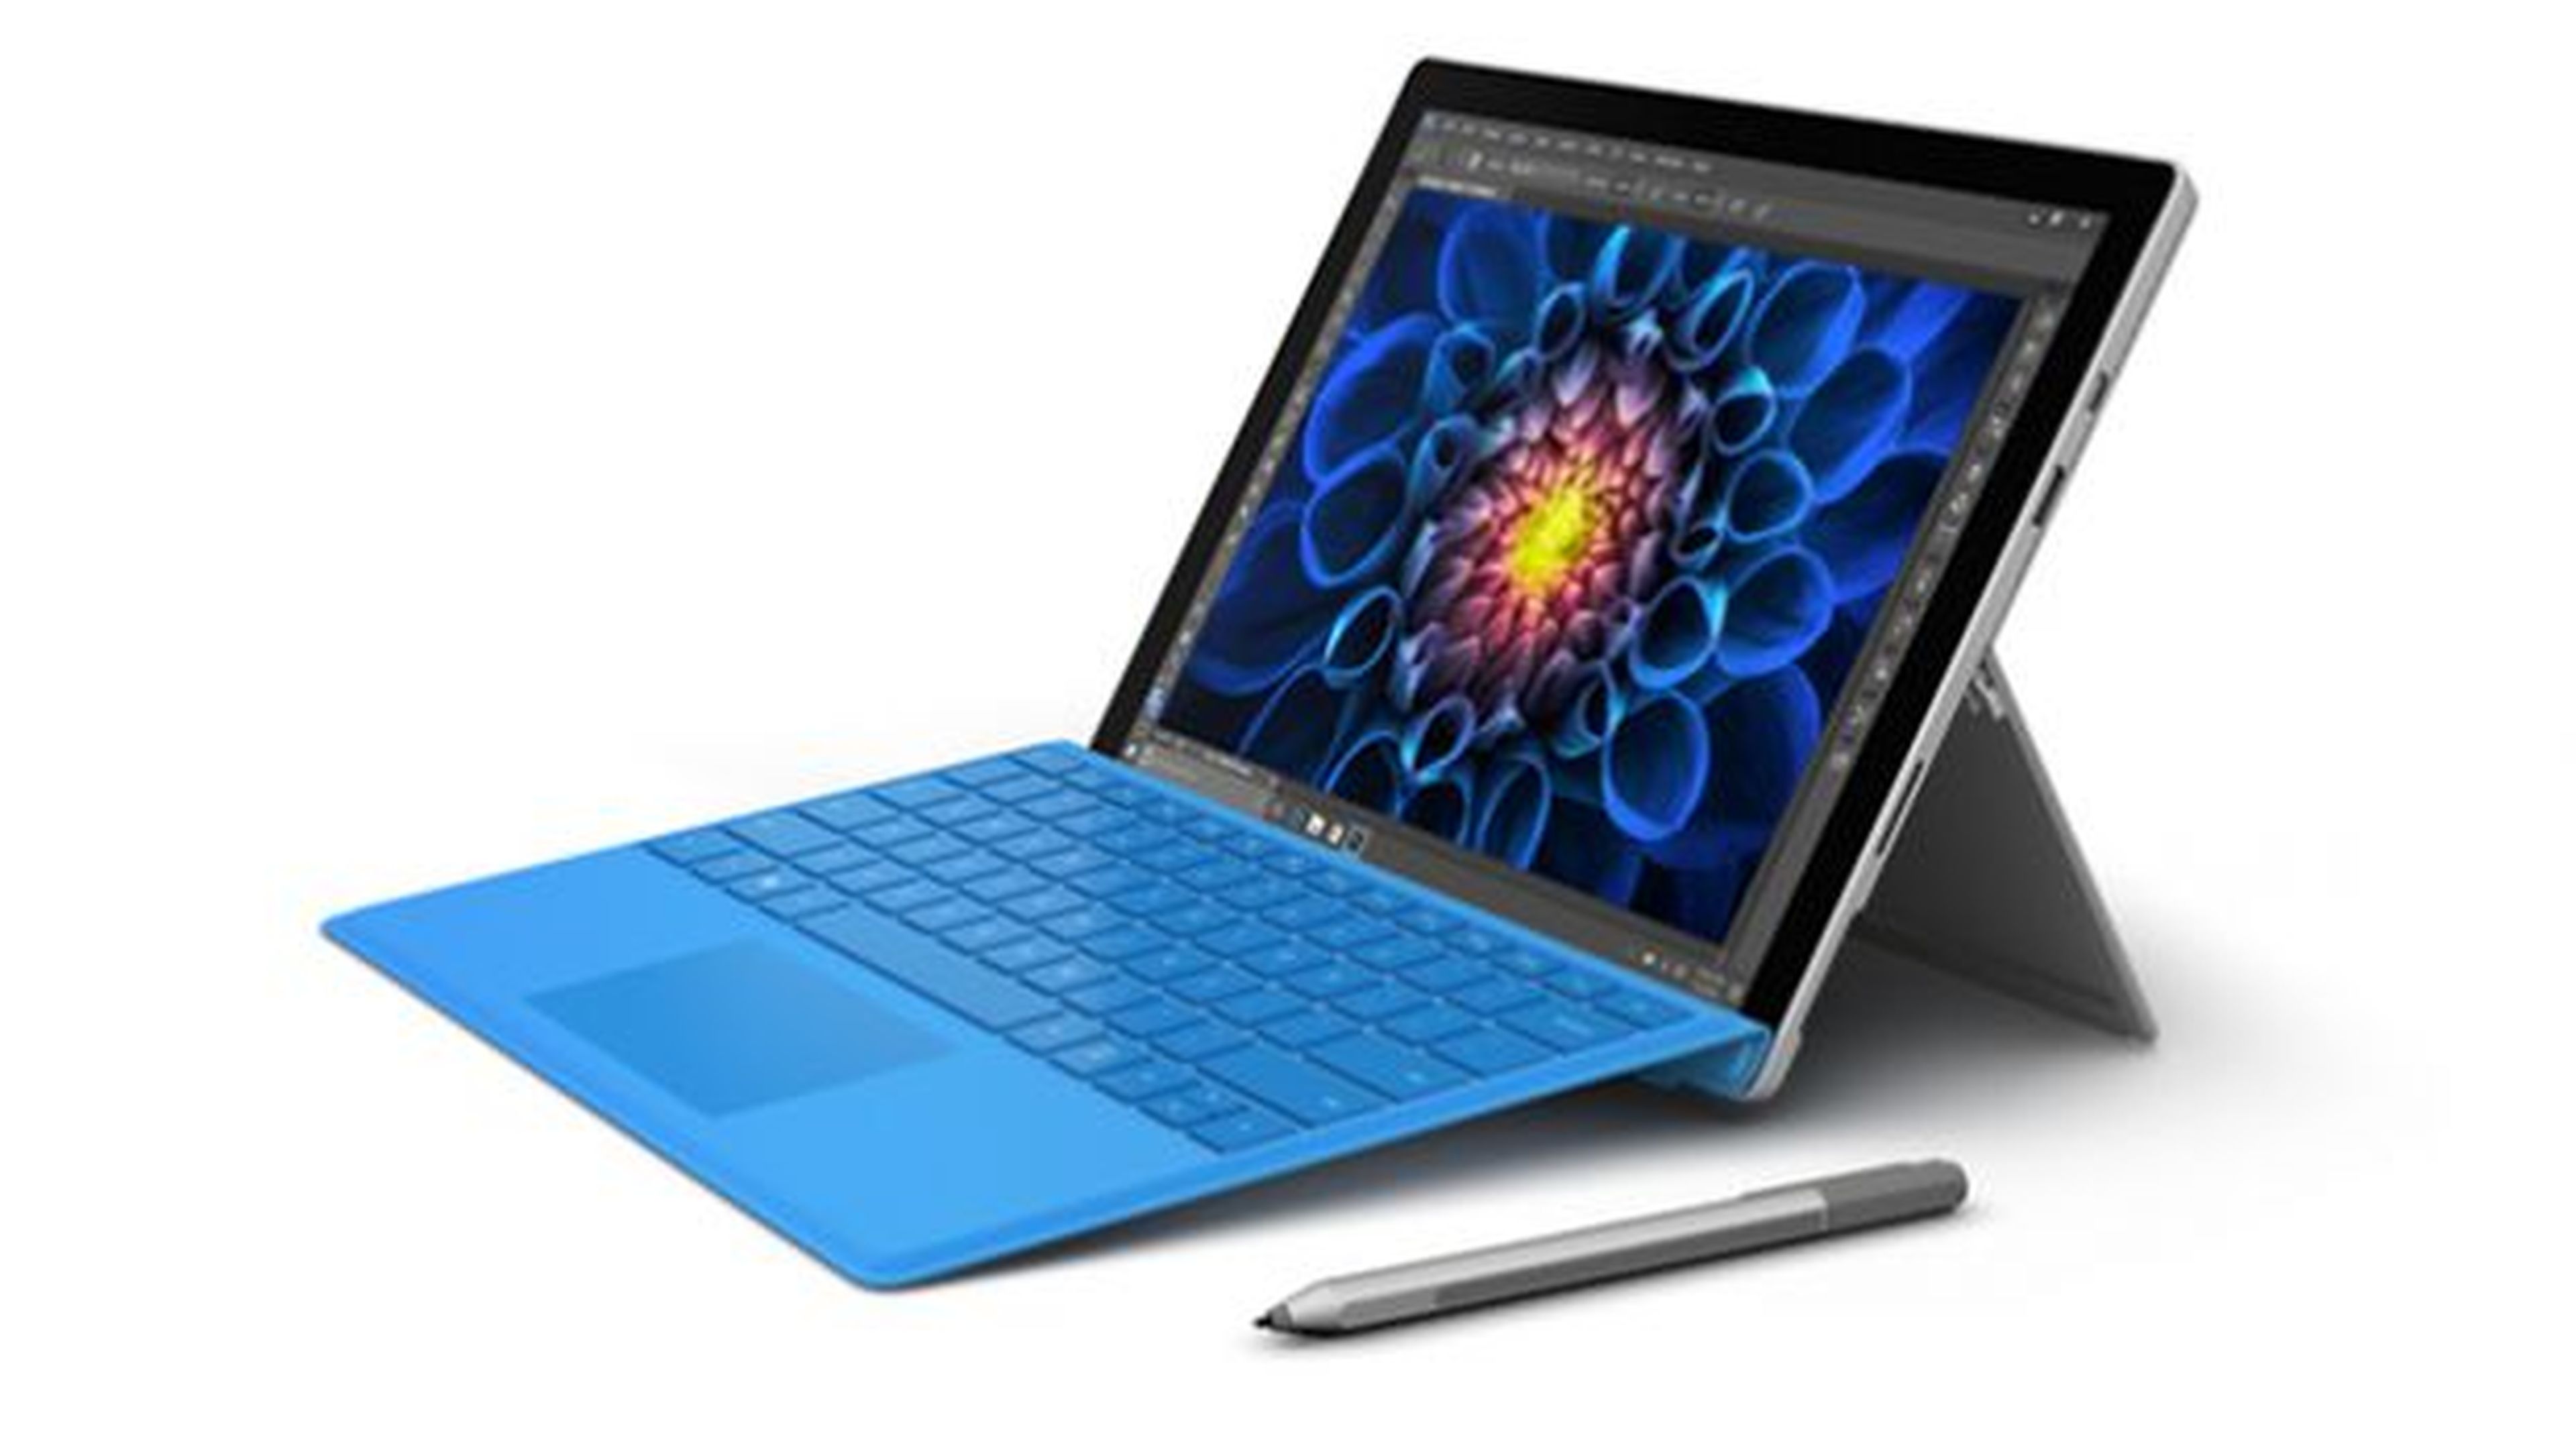 Pack compuesto por una Surface Pro 4